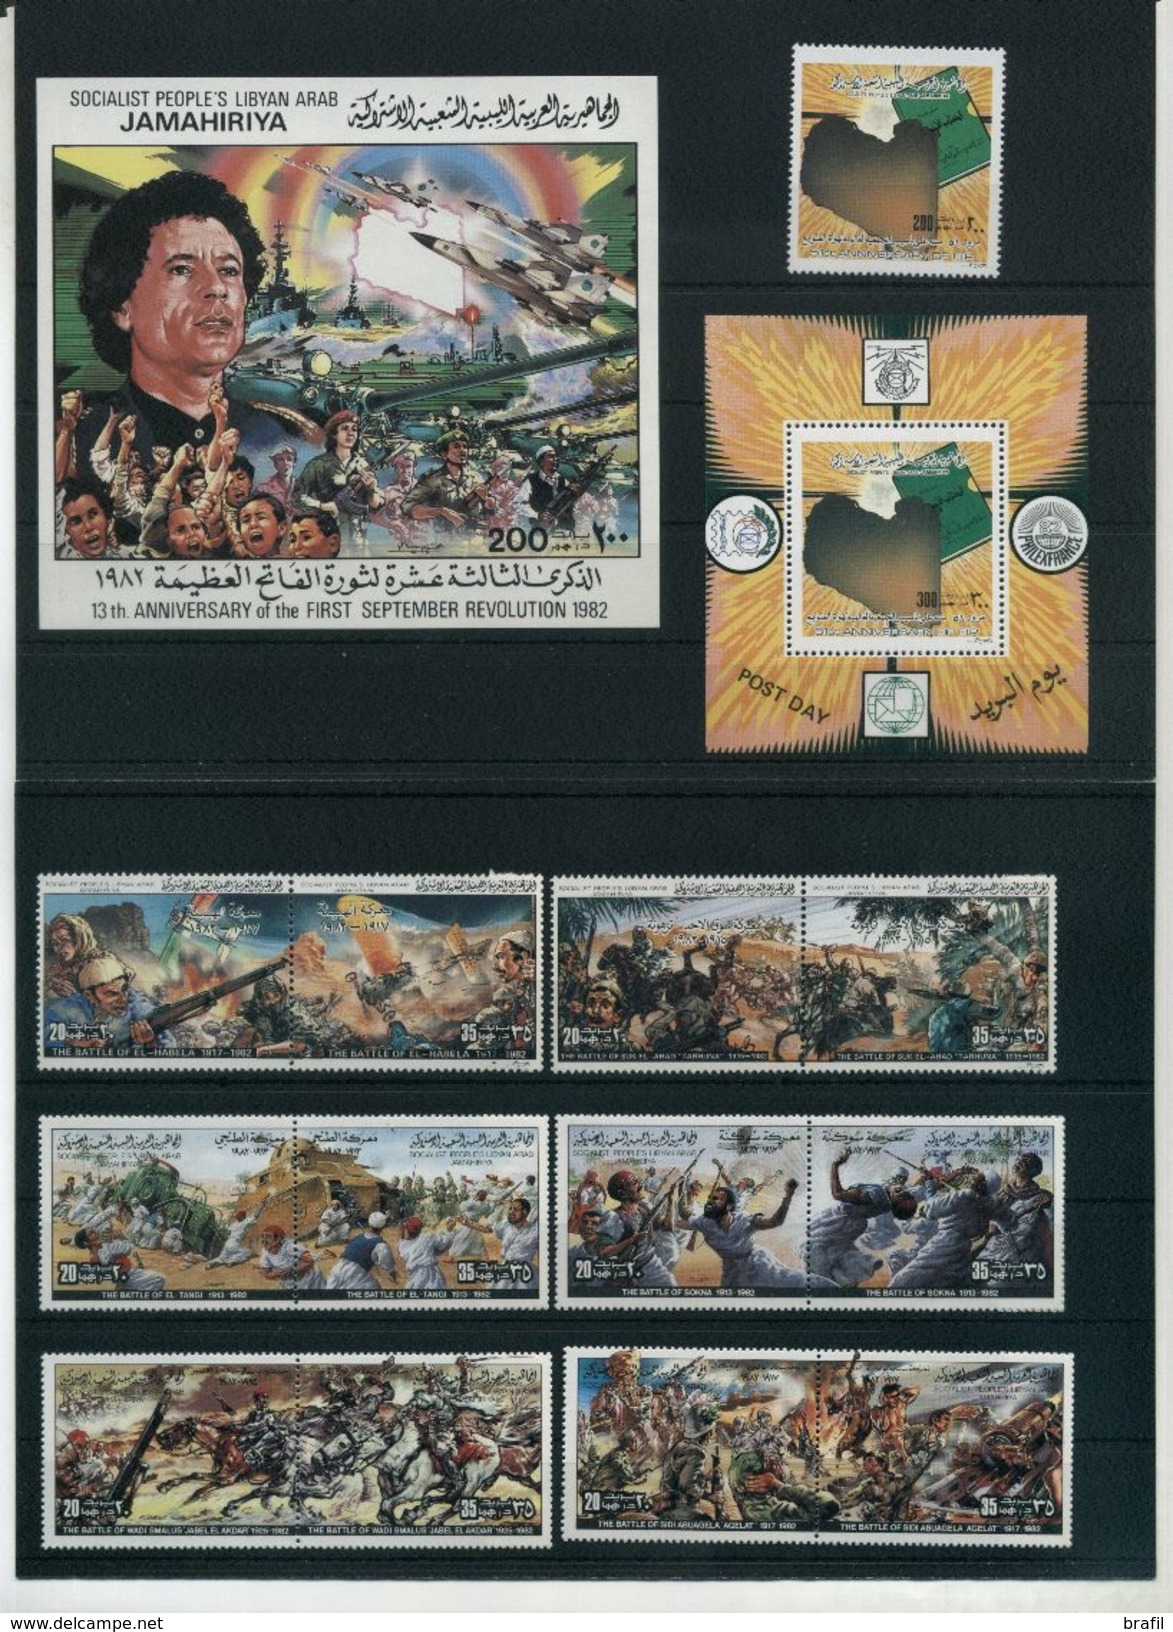 1982 Libia, tutte serie complete nuove (**)